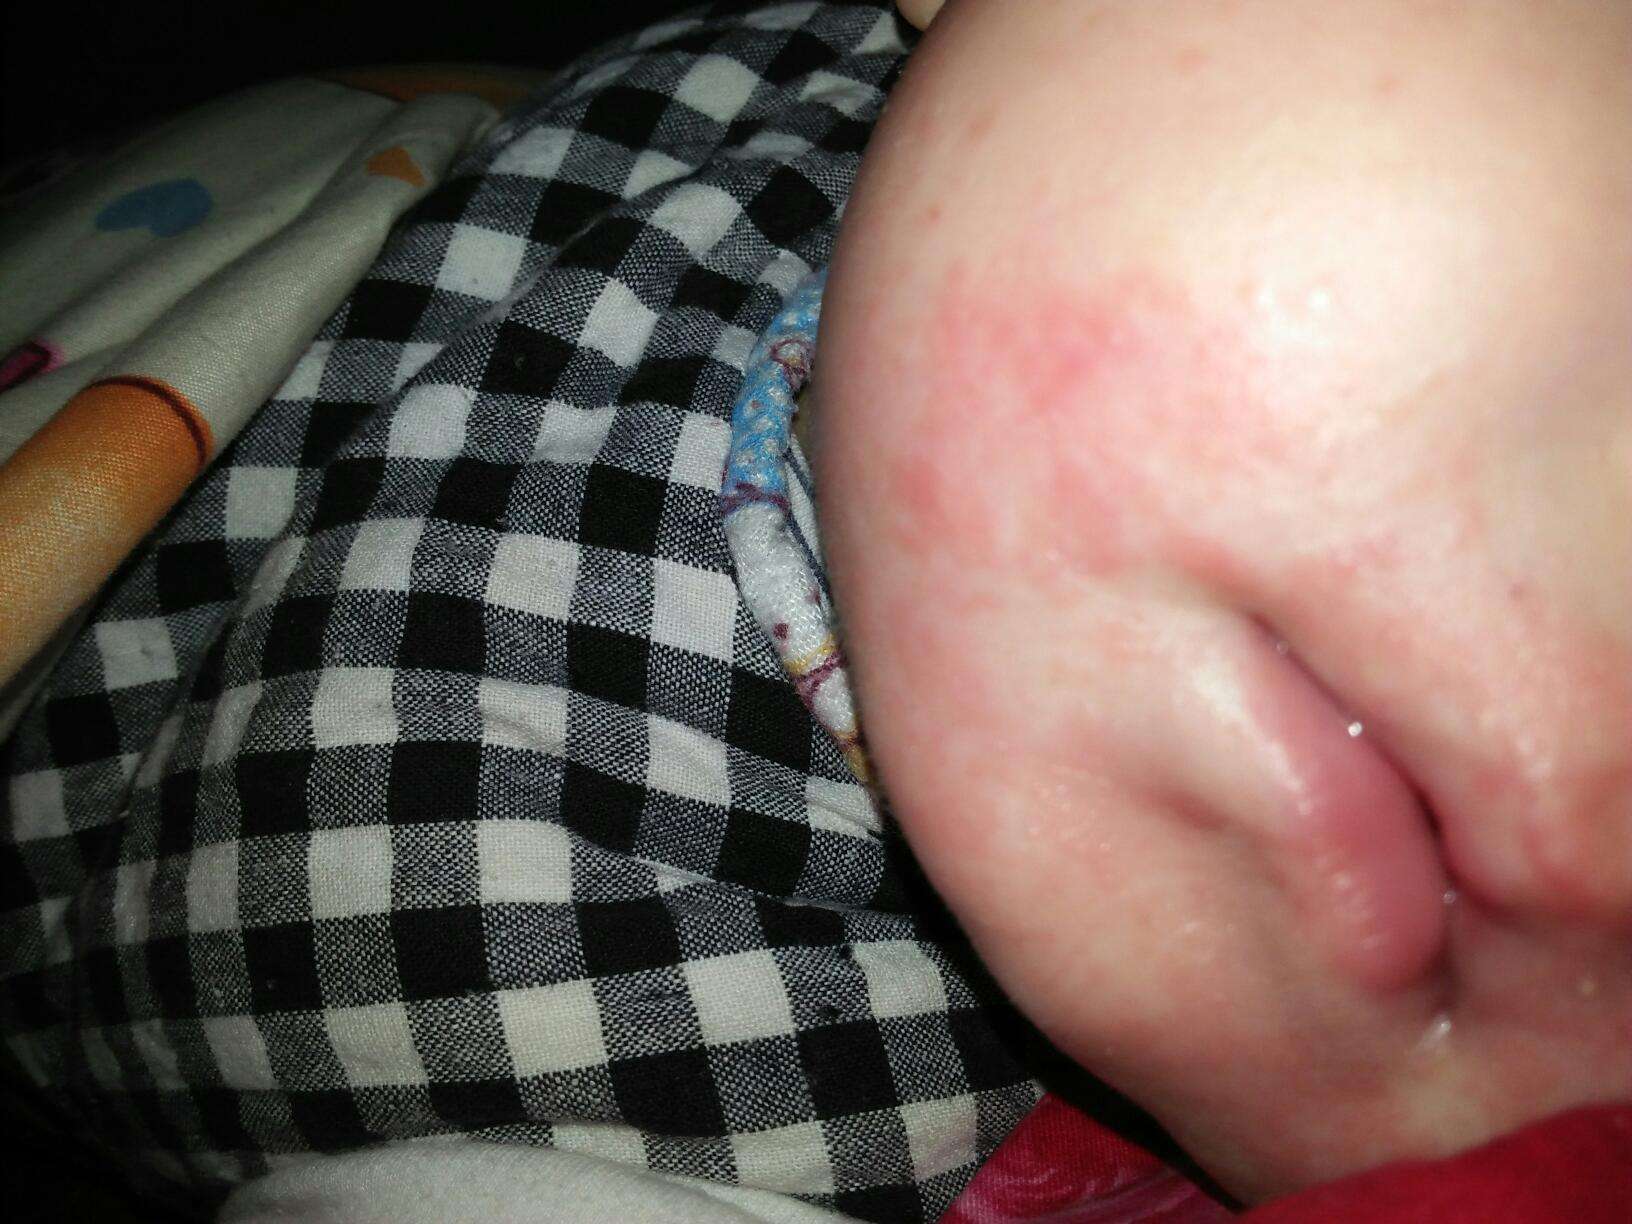 婴幼儿湿疹常见的诱发因素:1,皮肤干燥2,刺激物